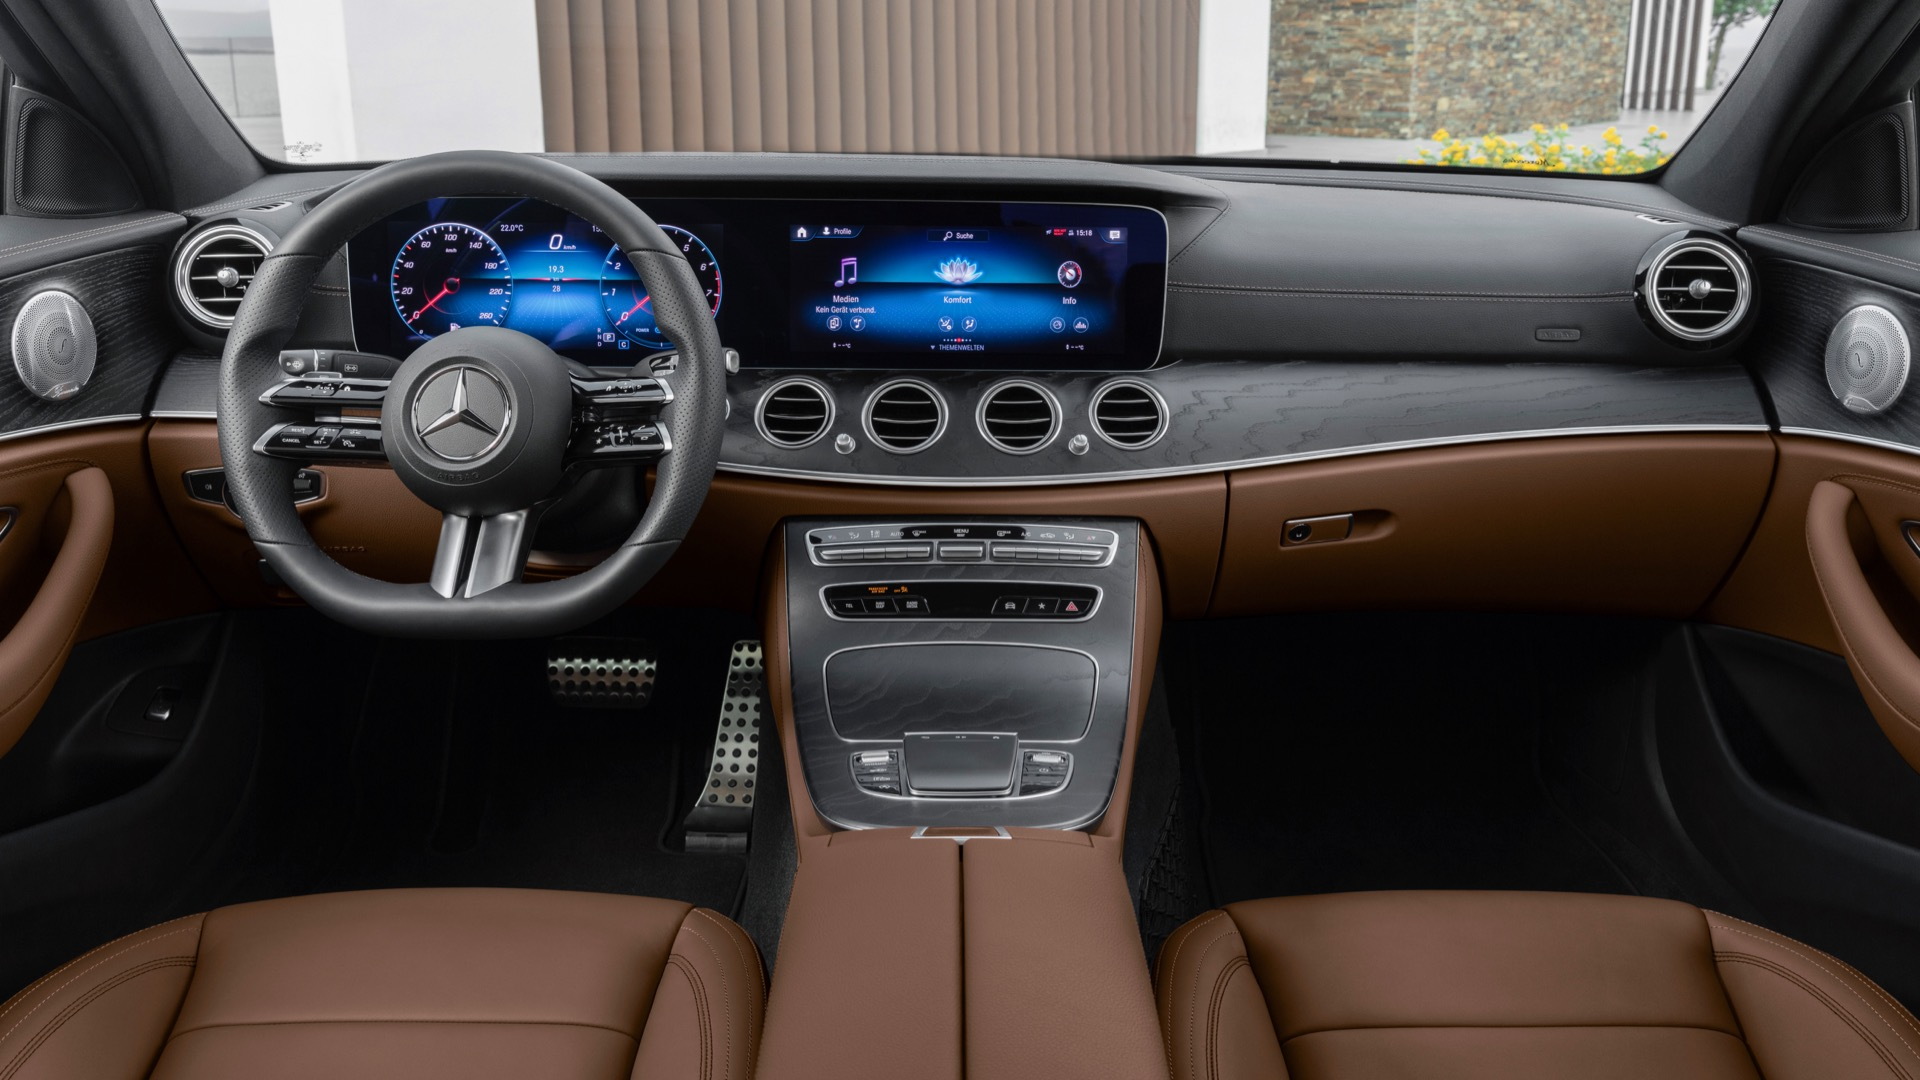 2021 Mercedes-Benz E-Class dashboard